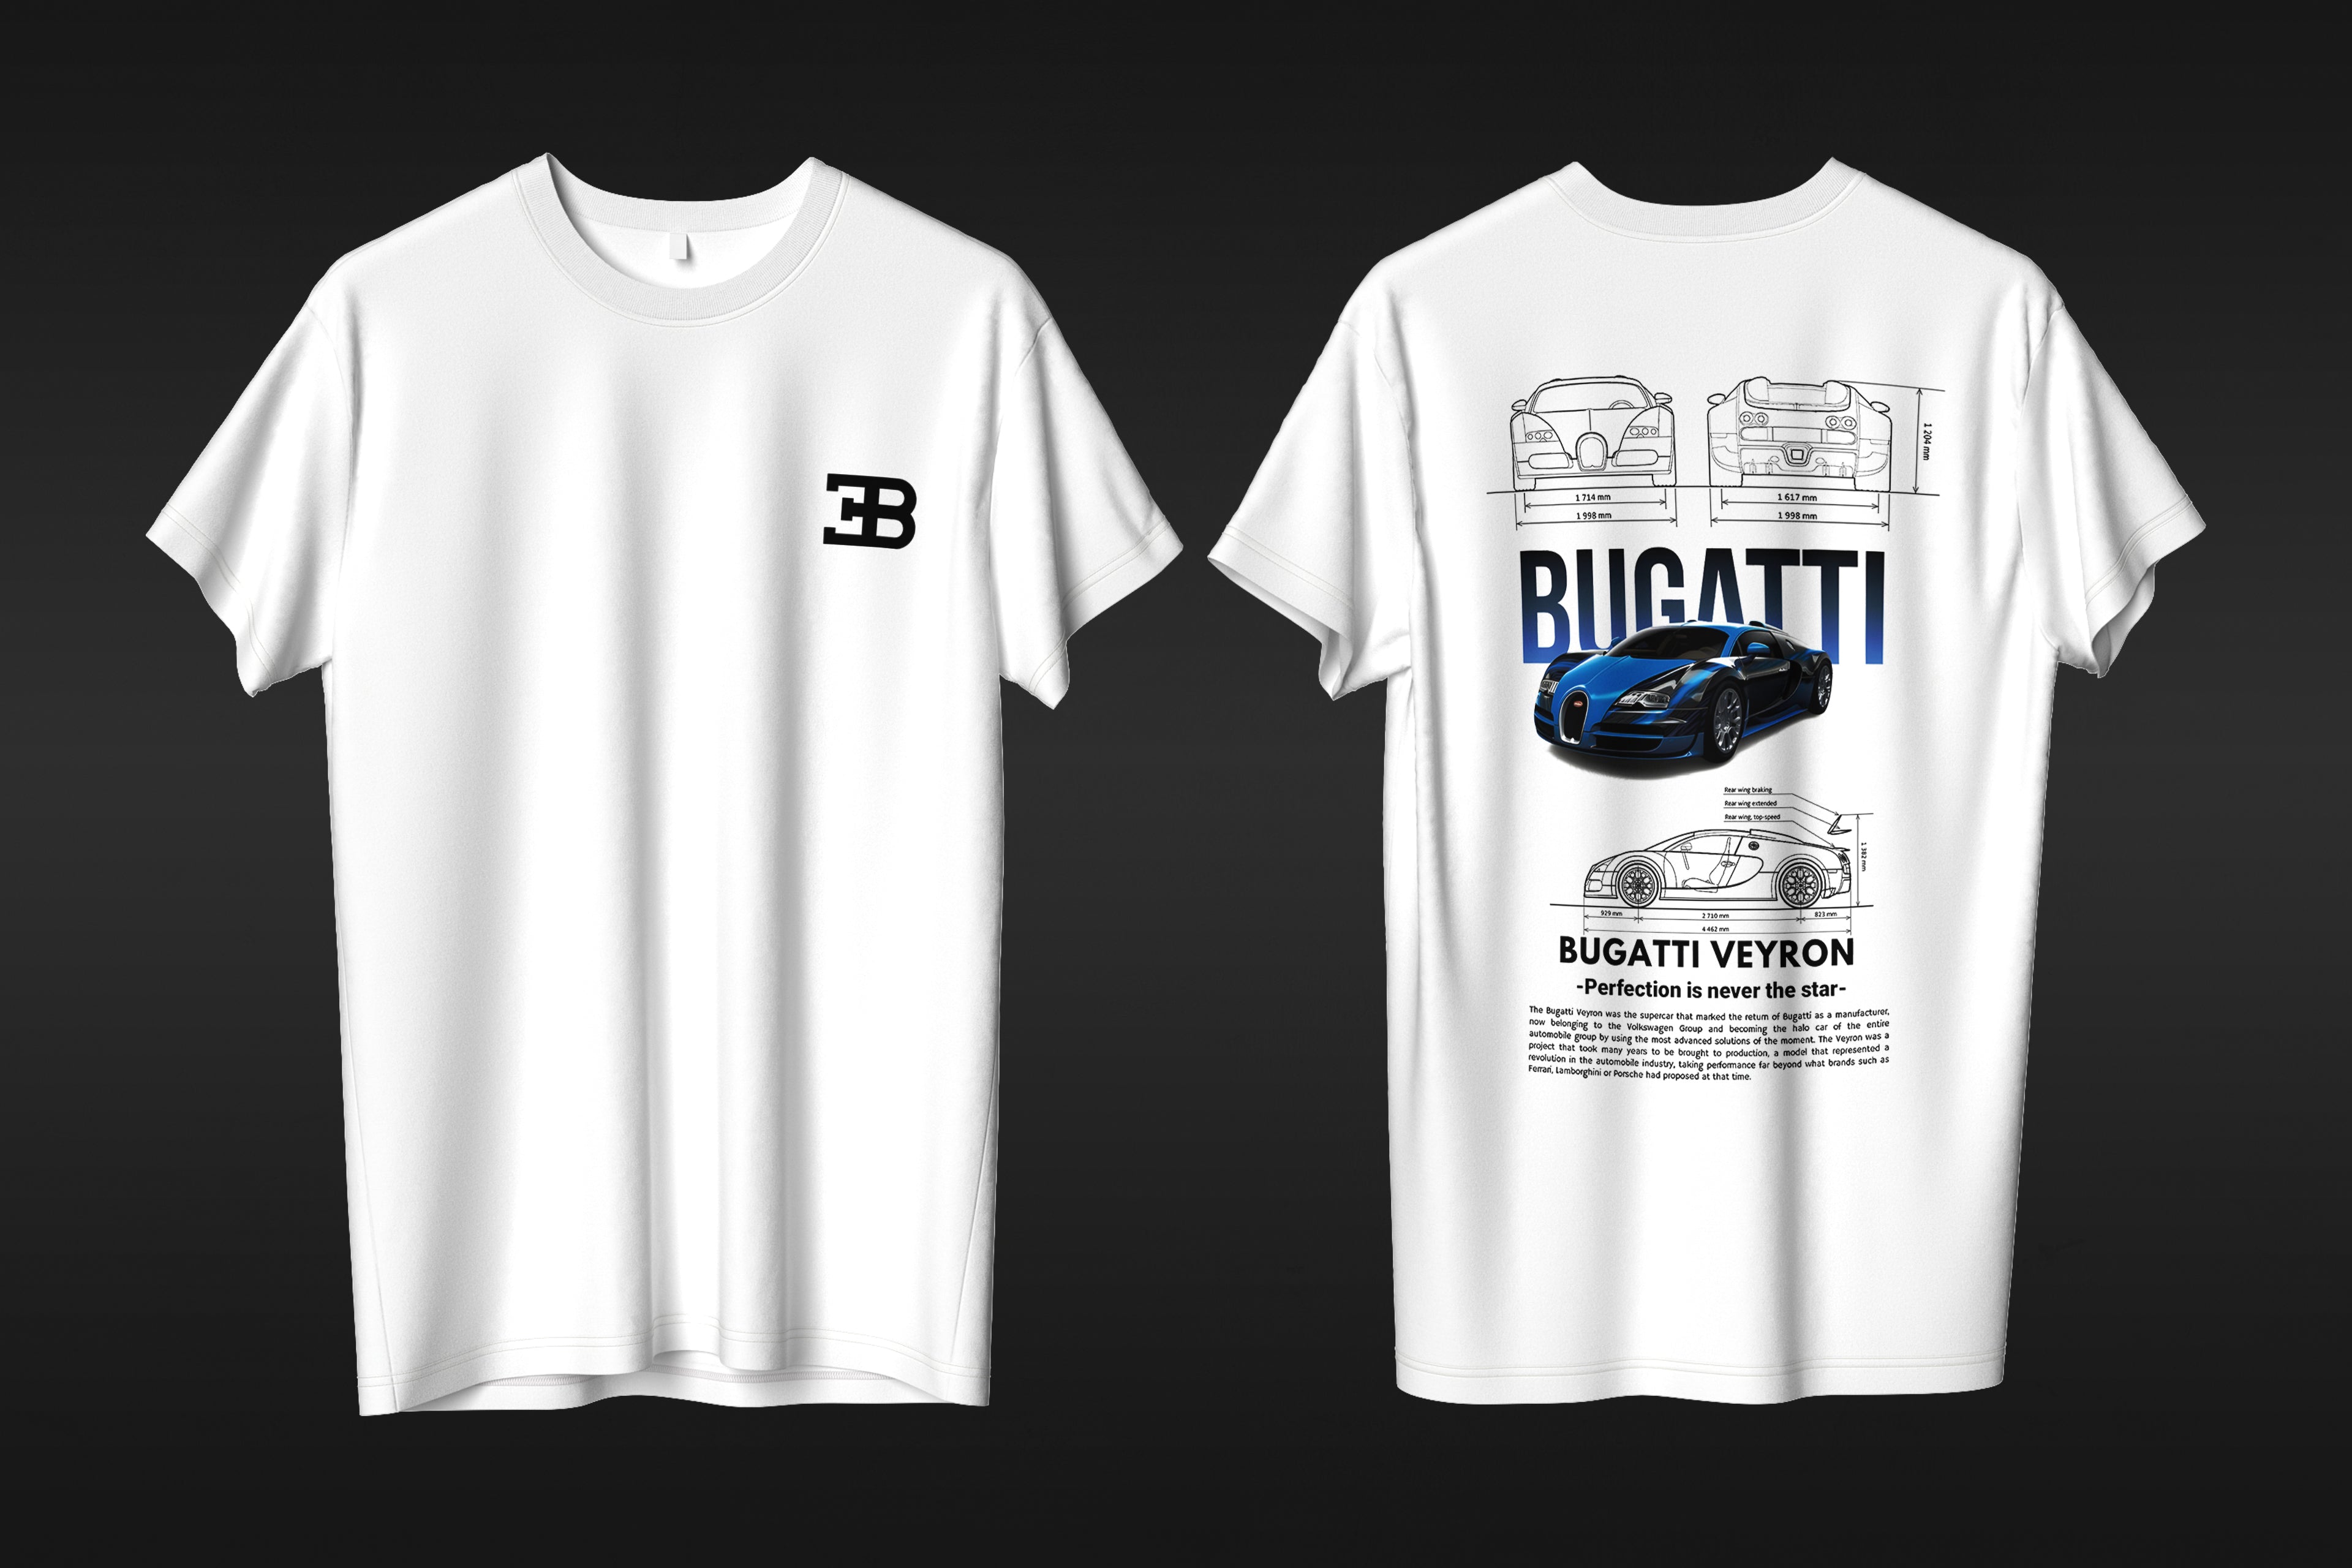 Bugatti Veyron - T-shirt